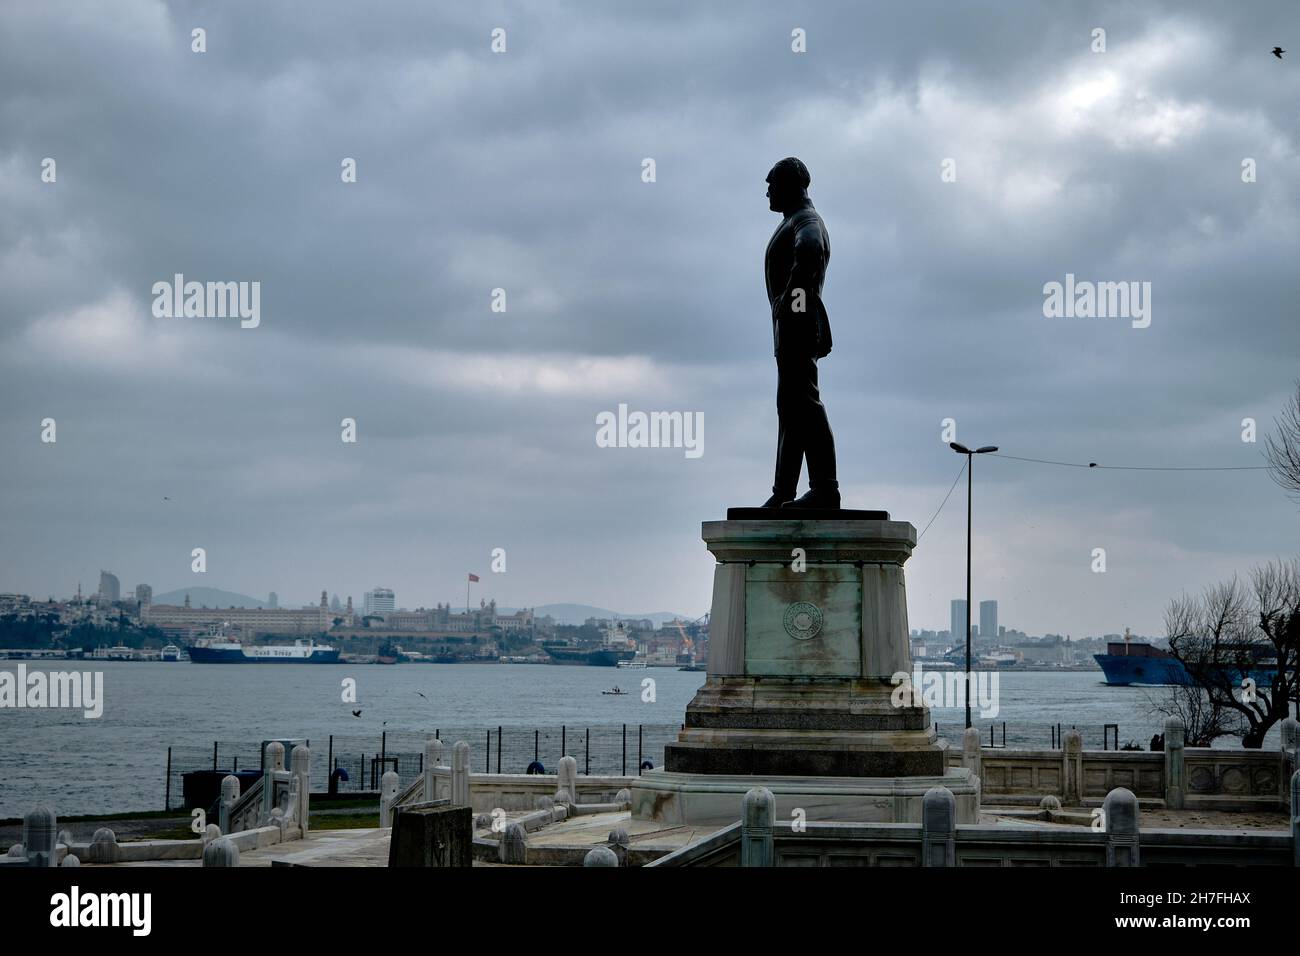 Ataturk fondatore della scultura della repubblica Turca a Sarayburnu istanbul durante il tempo coperto e sfondo bosforo istanbul Foto Stock